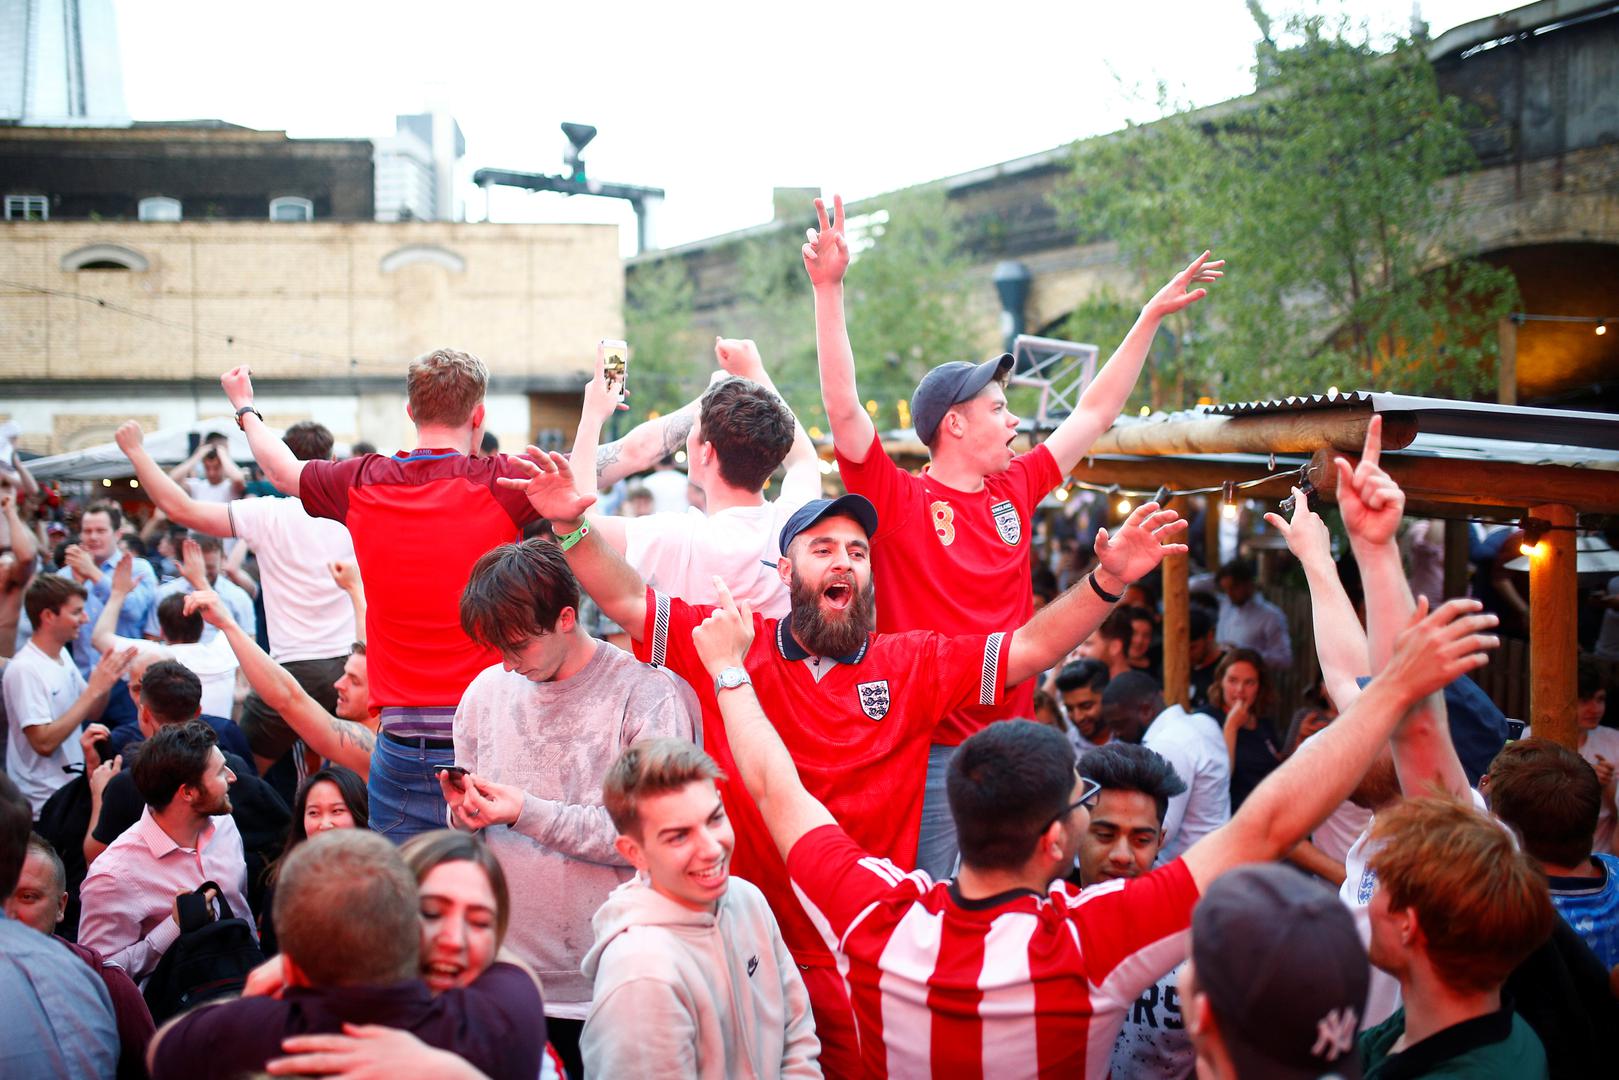 Ovako se slavilo u Londonu, a mnogi mediji opisuju to slavlje kao da je Engleska osvojila naslov svjetskog prvaka.